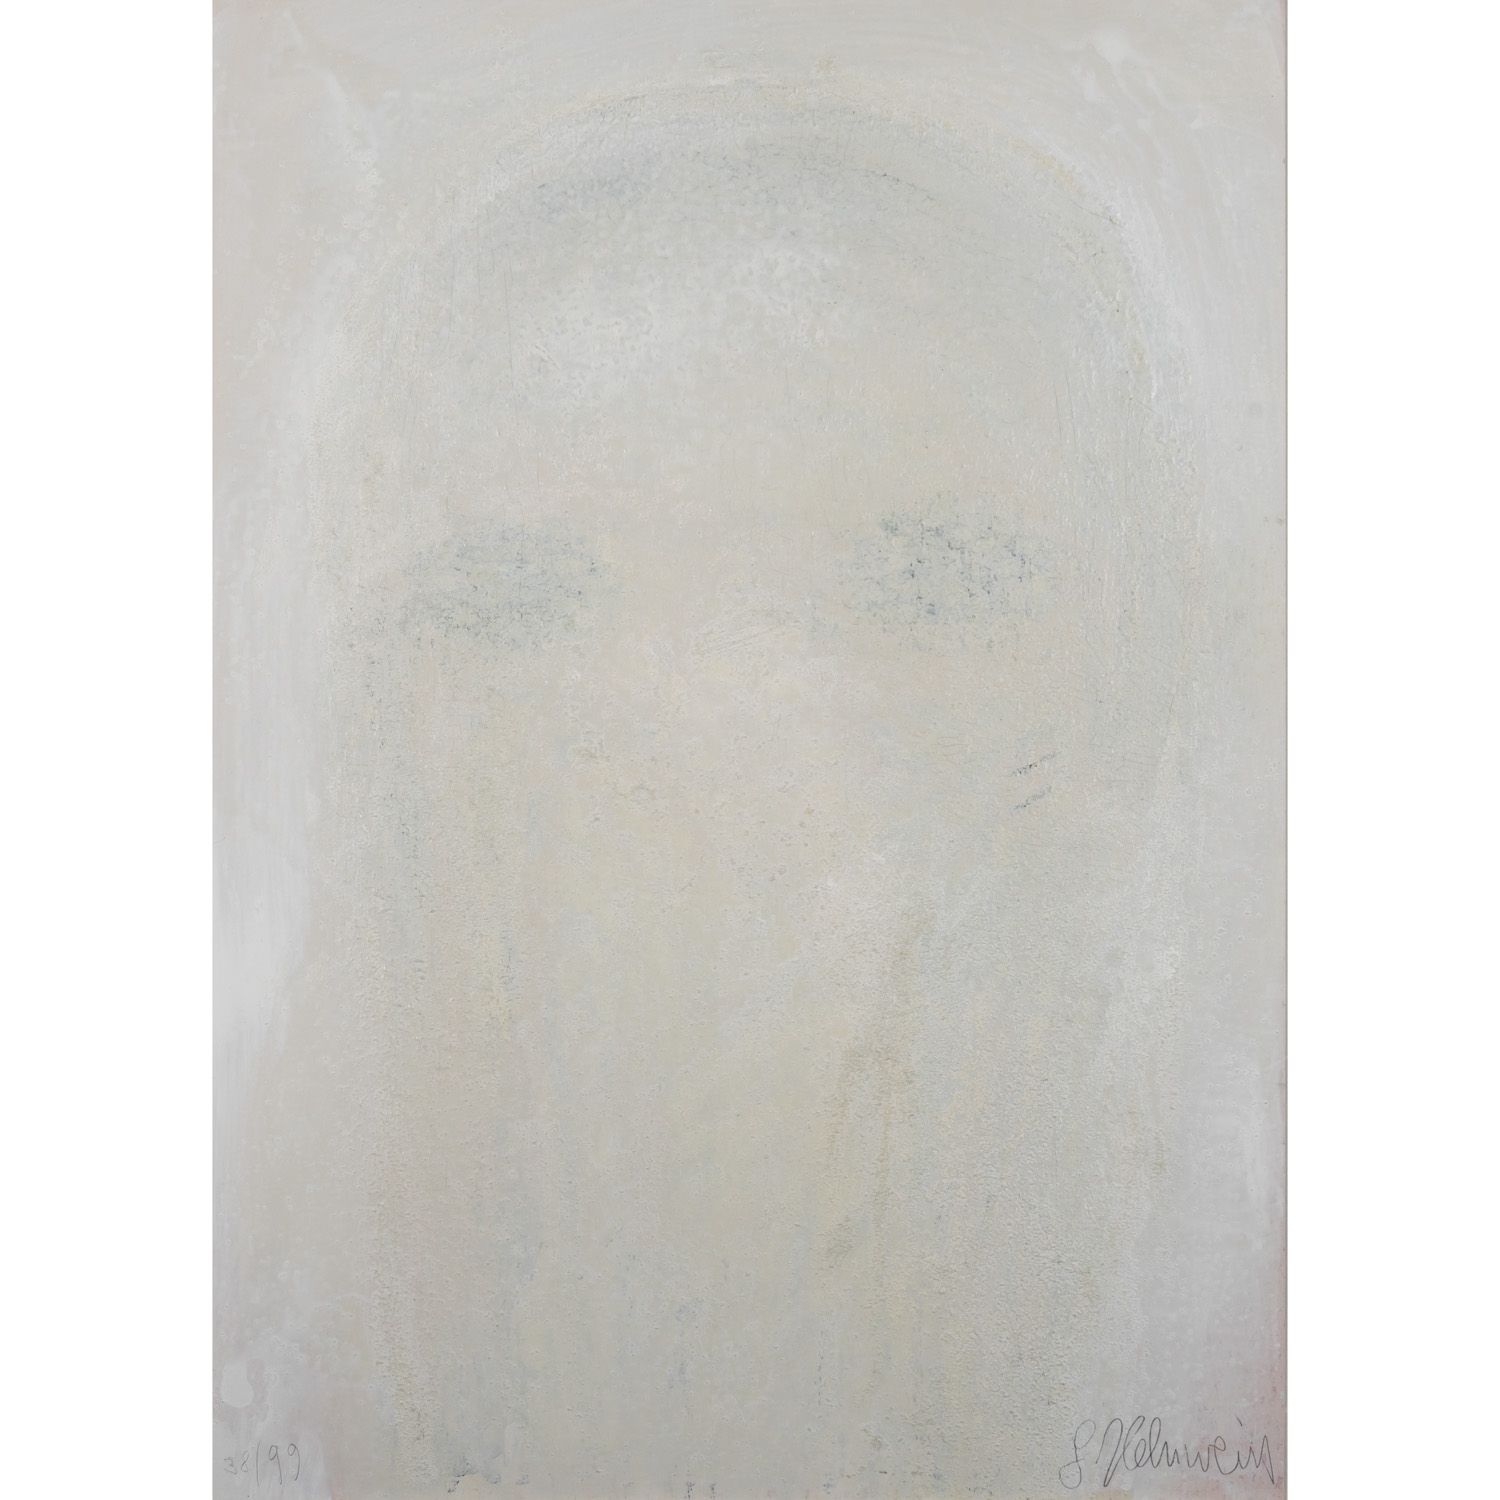 HELNWEIN, GOTTFRIED (geb. 1948), "Gesicht (Selbst - Gottfried Helnwein